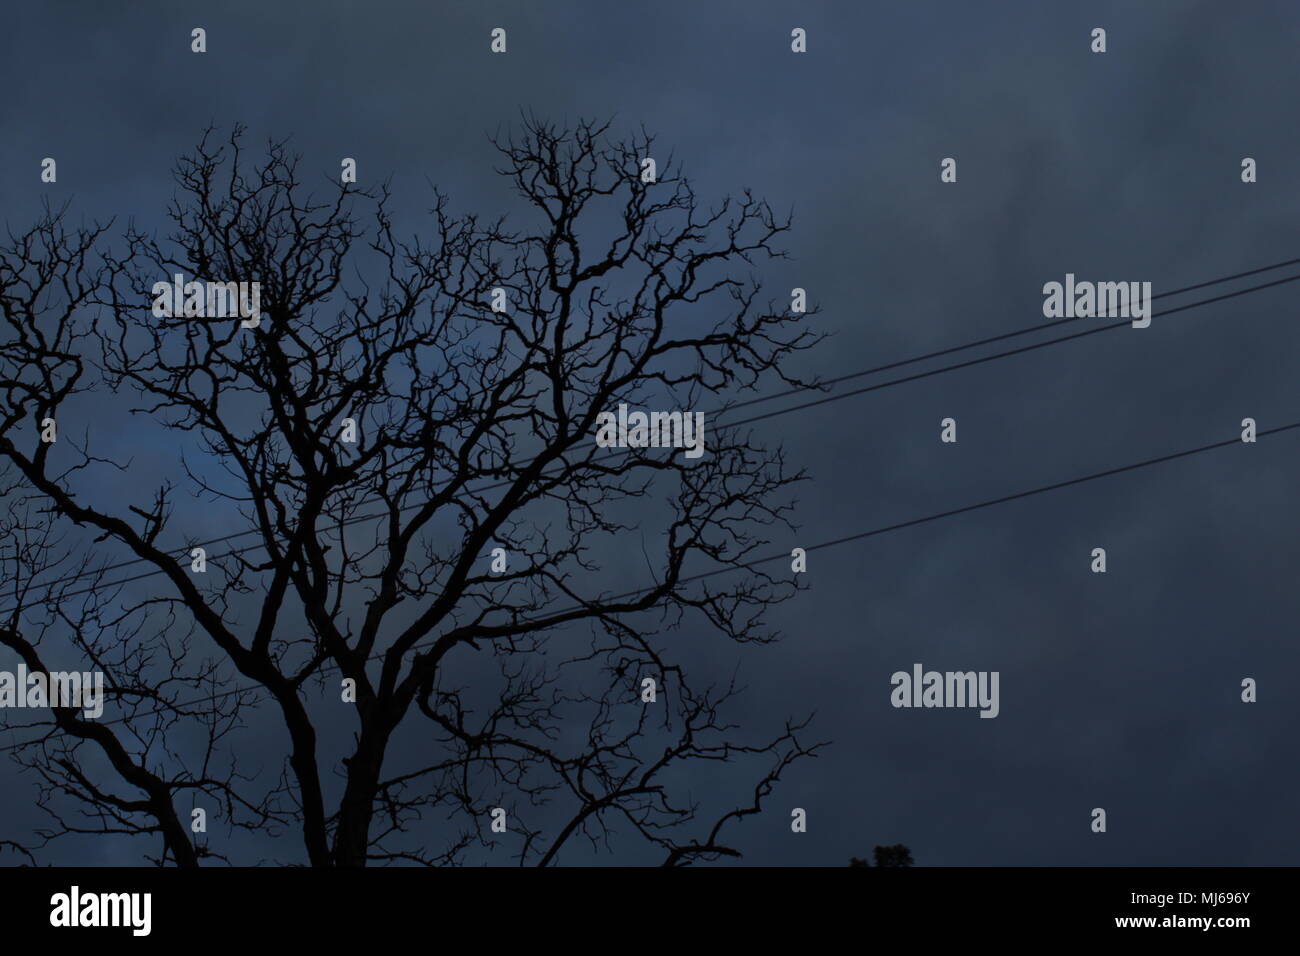 The Haunted sur arbre mort avec câble téléphonique à l'aube Banque D'Images